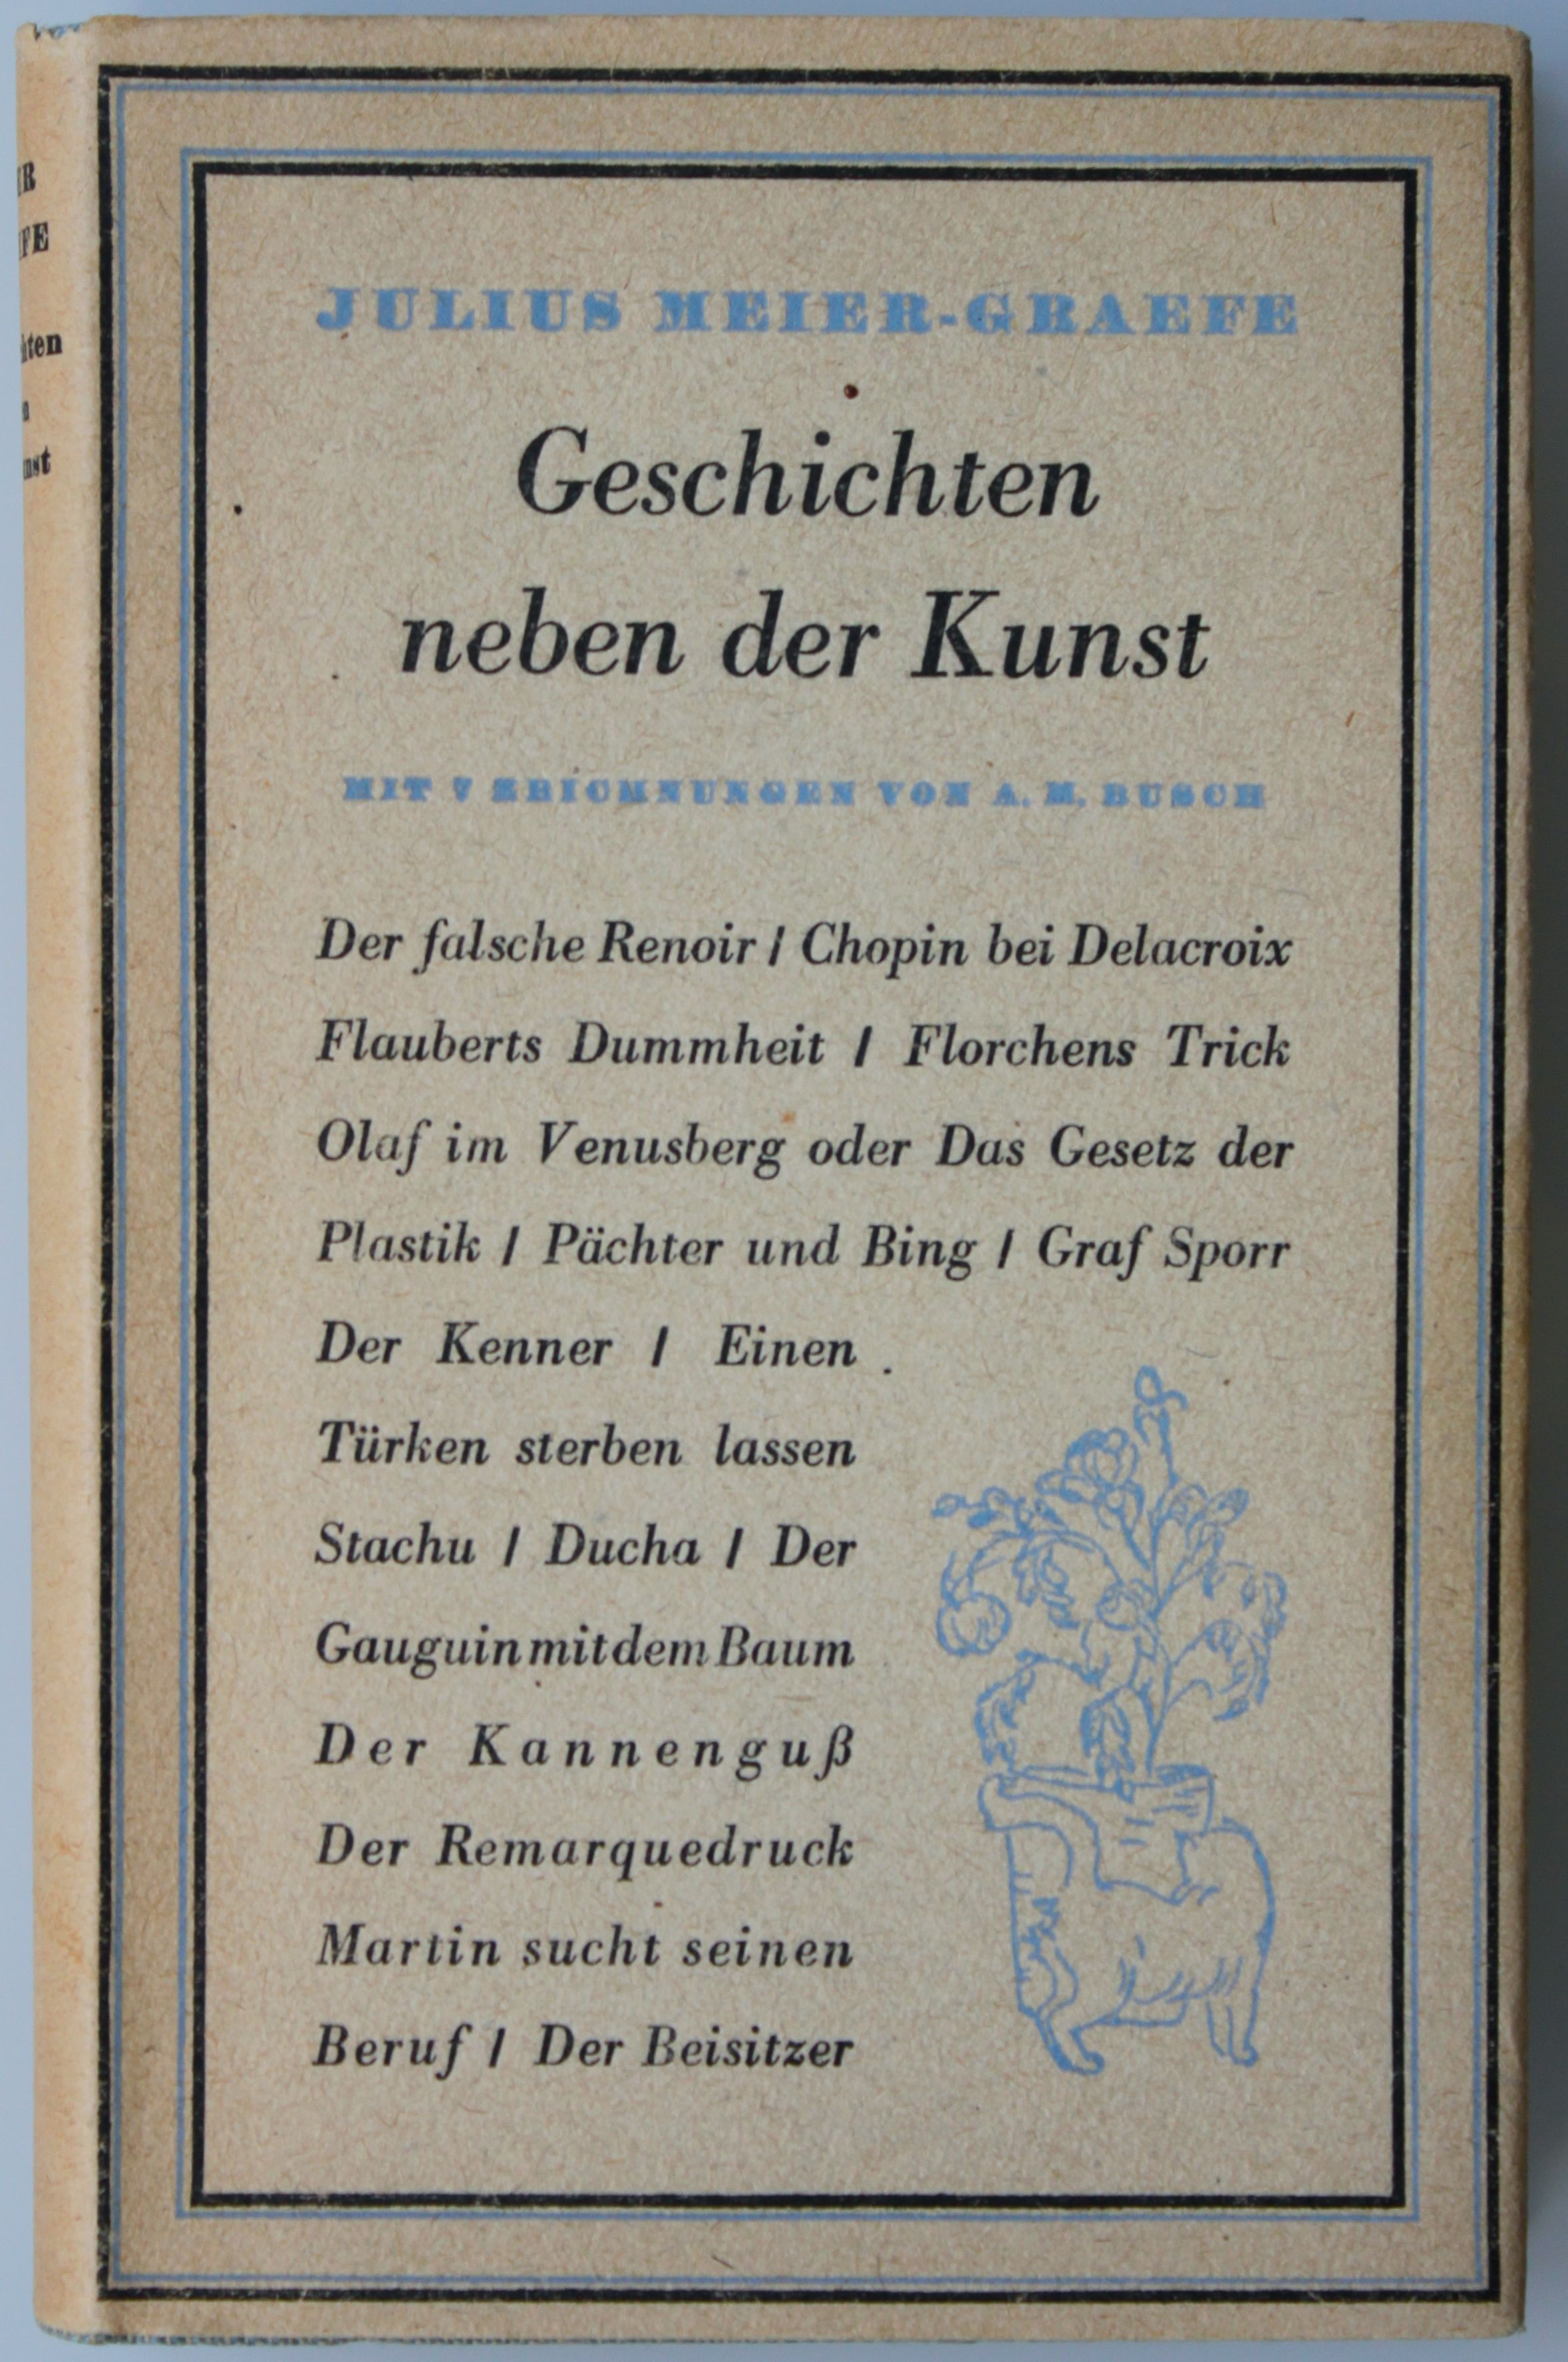 Meier-Graefe, Geschichten neben der Kunst (A. M. Busch)